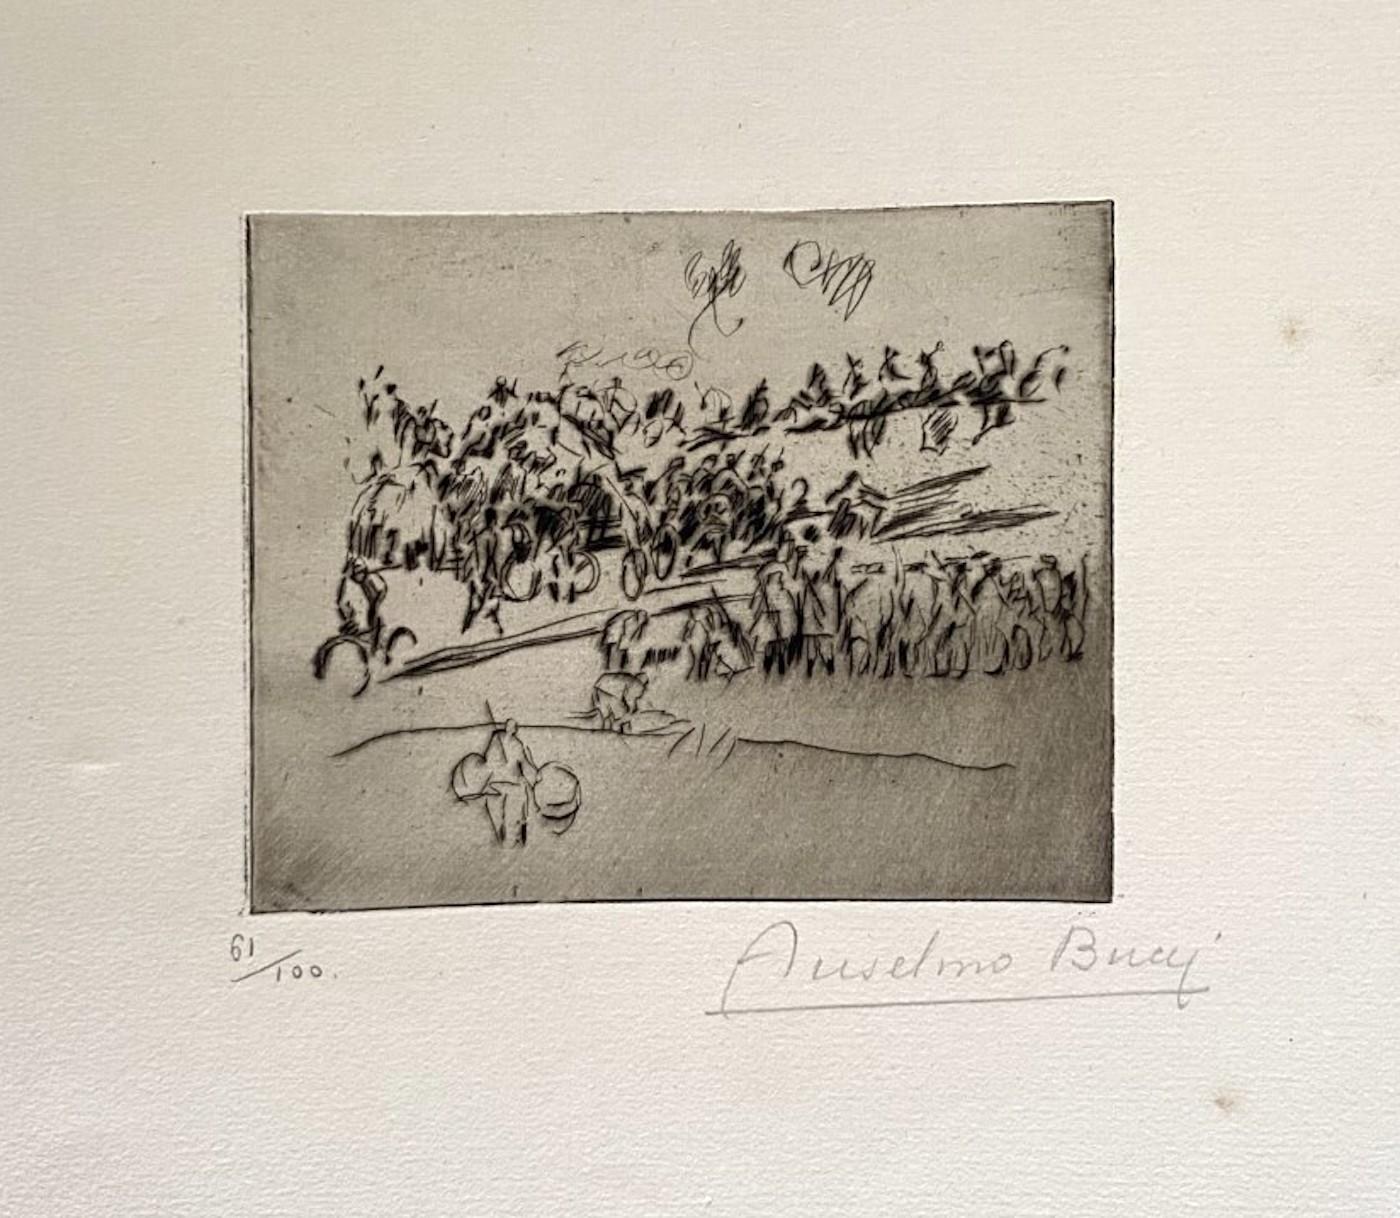 "Military" 1917s est une belle estampe en technique de gravure, réalisée par Anselmo Bucci (1887-1955).

Signé à la main. Numéroté 61/100 des tirages en bas à gauche. Dans le coin inférieur gauche, une iscription illisible écrite au